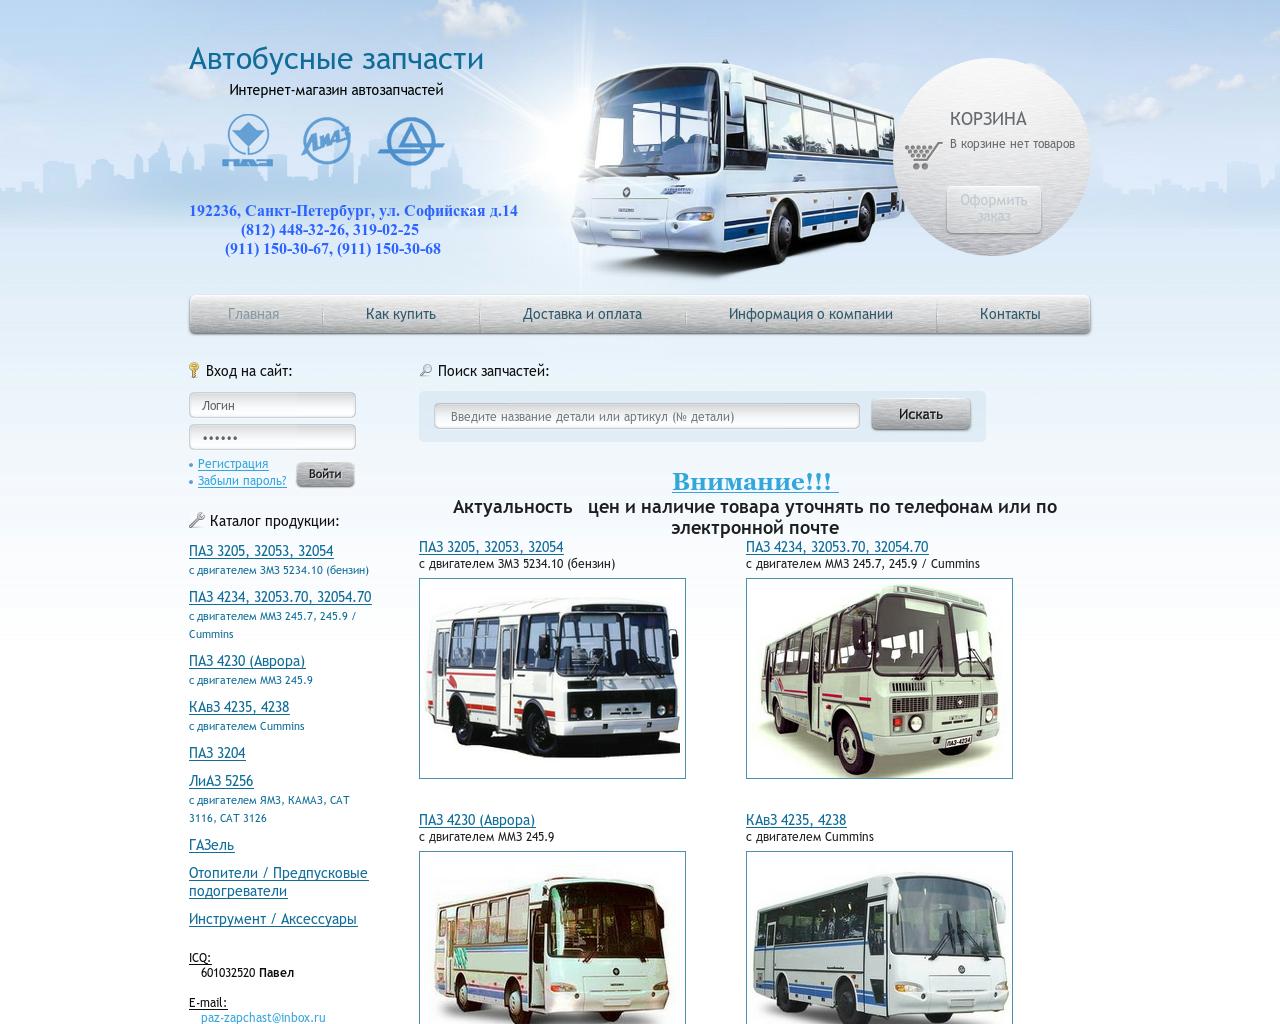 Автобусы ру орел. Автобусные запчасти. Запчасти для автобусов. ПАЗ Санкт-Петербург. Импортер автобусных запчастей.